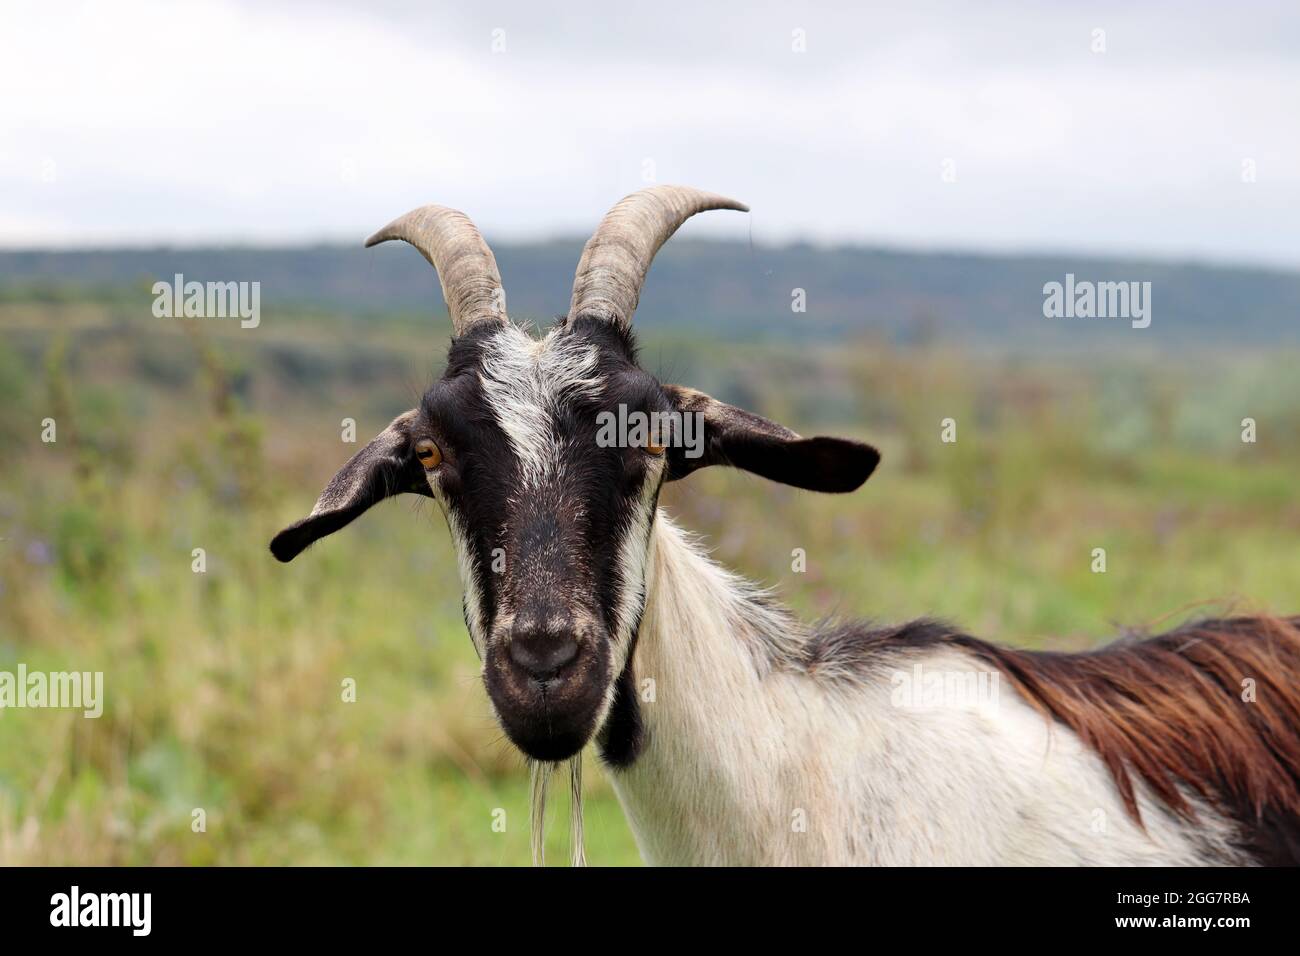 Portrait de chèvre sur fond de nature. Chèvre corné avec tête noire regardant l'appareil photo debout sur un pré Banque D'Images